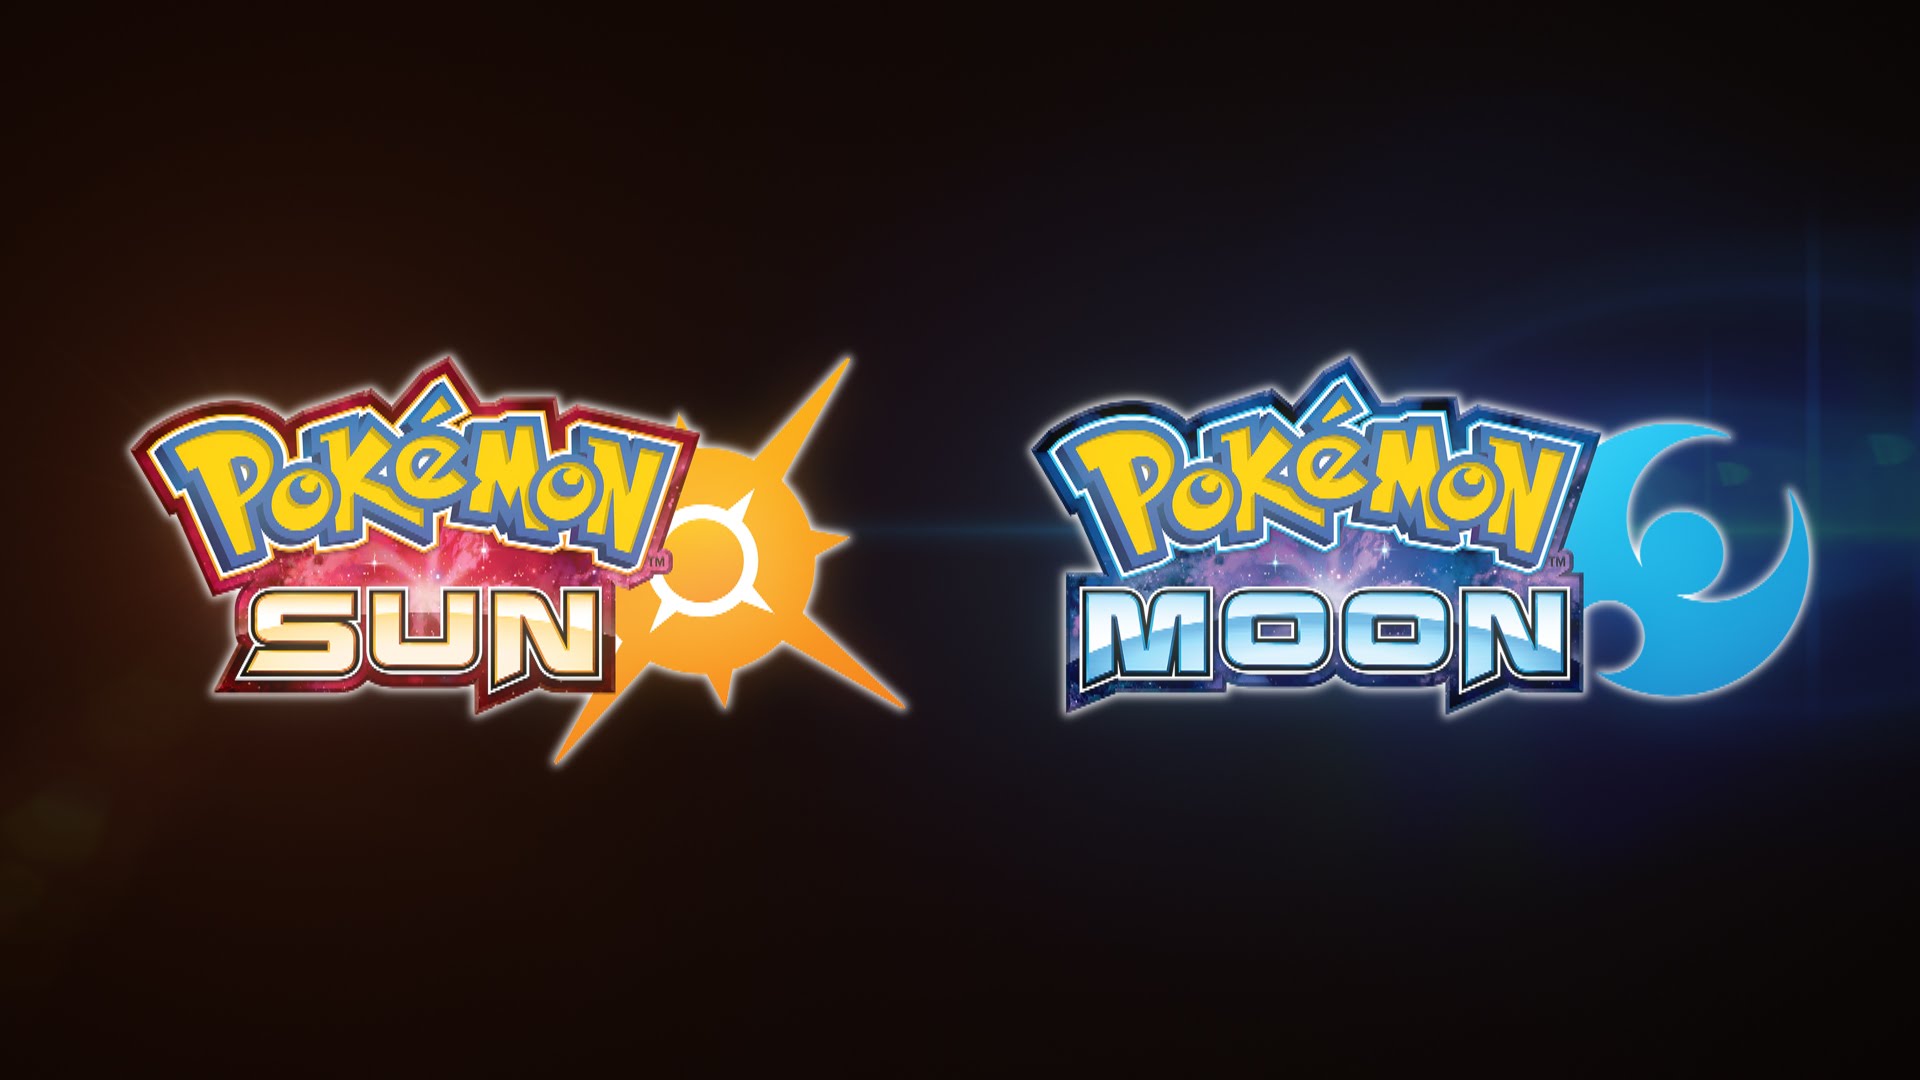 Pokémon Sun And Moon HD wallpapers, Desktop wallpaper - most viewed